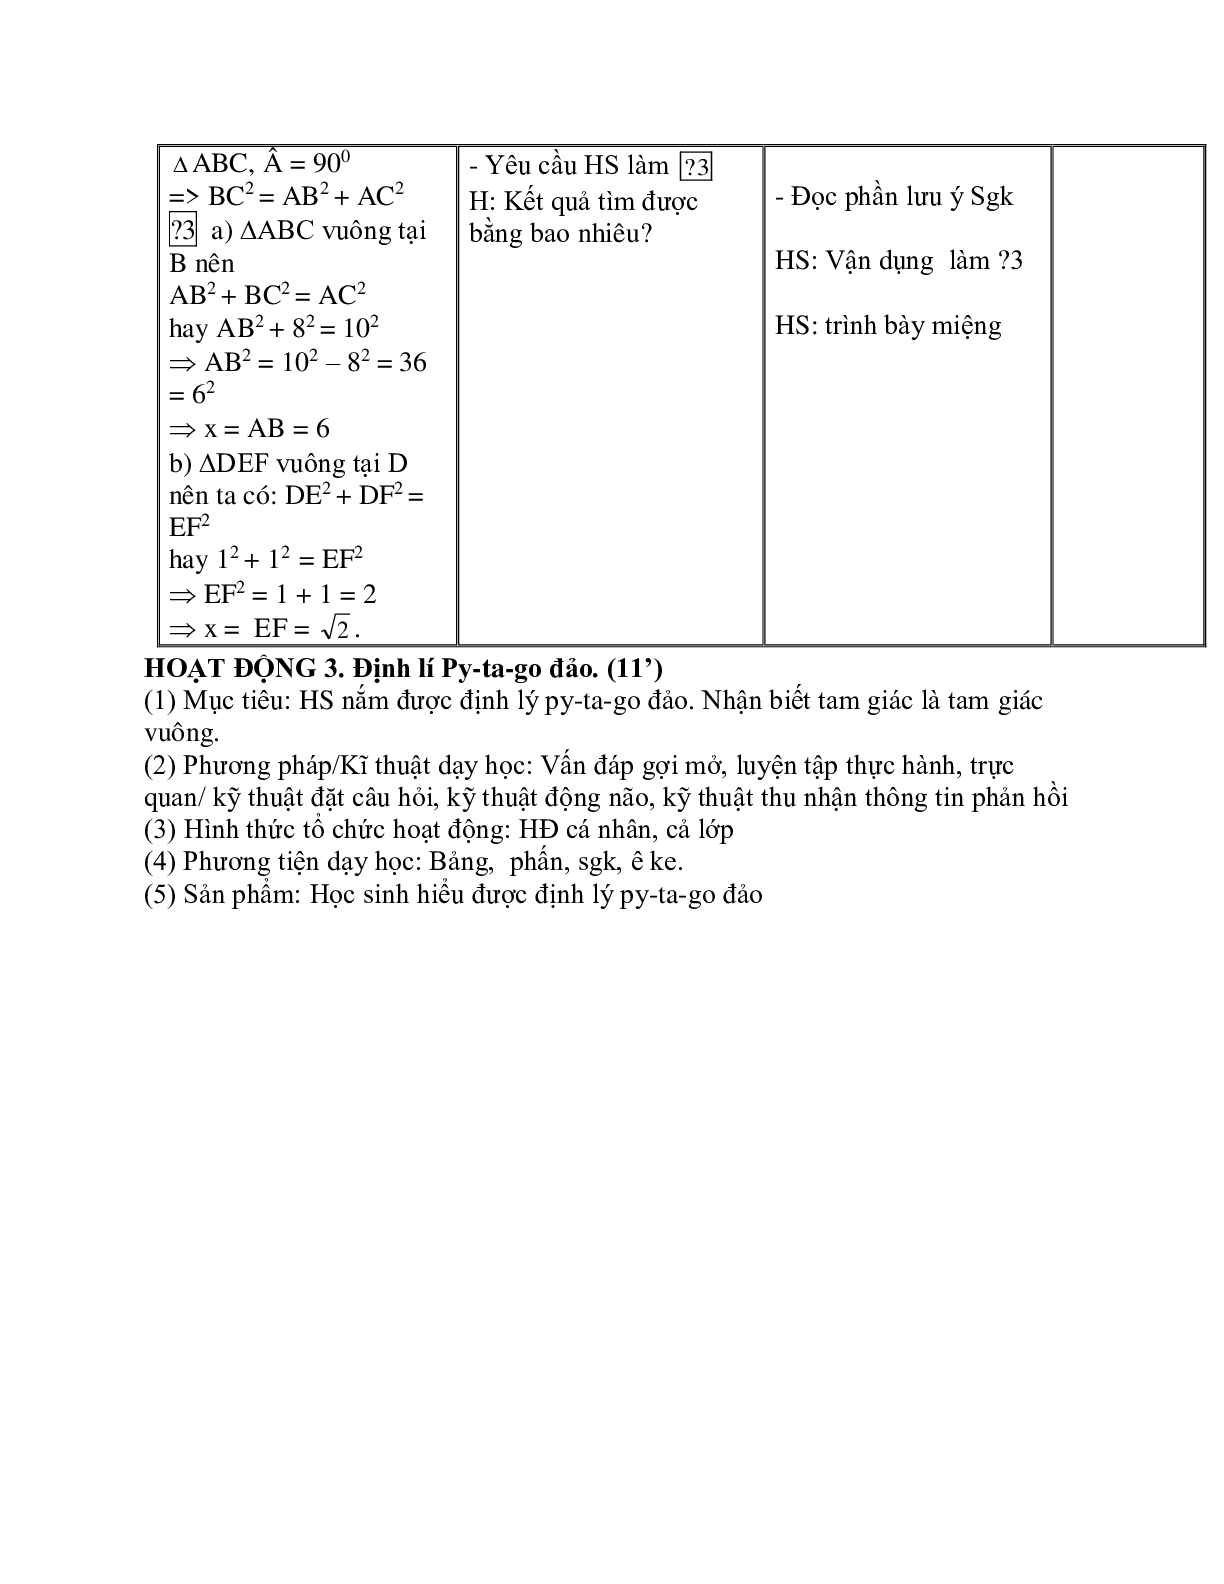 Giáo án Toán học 7 bài 7: Định lý Py - ta - go hay nhất (trang 4)